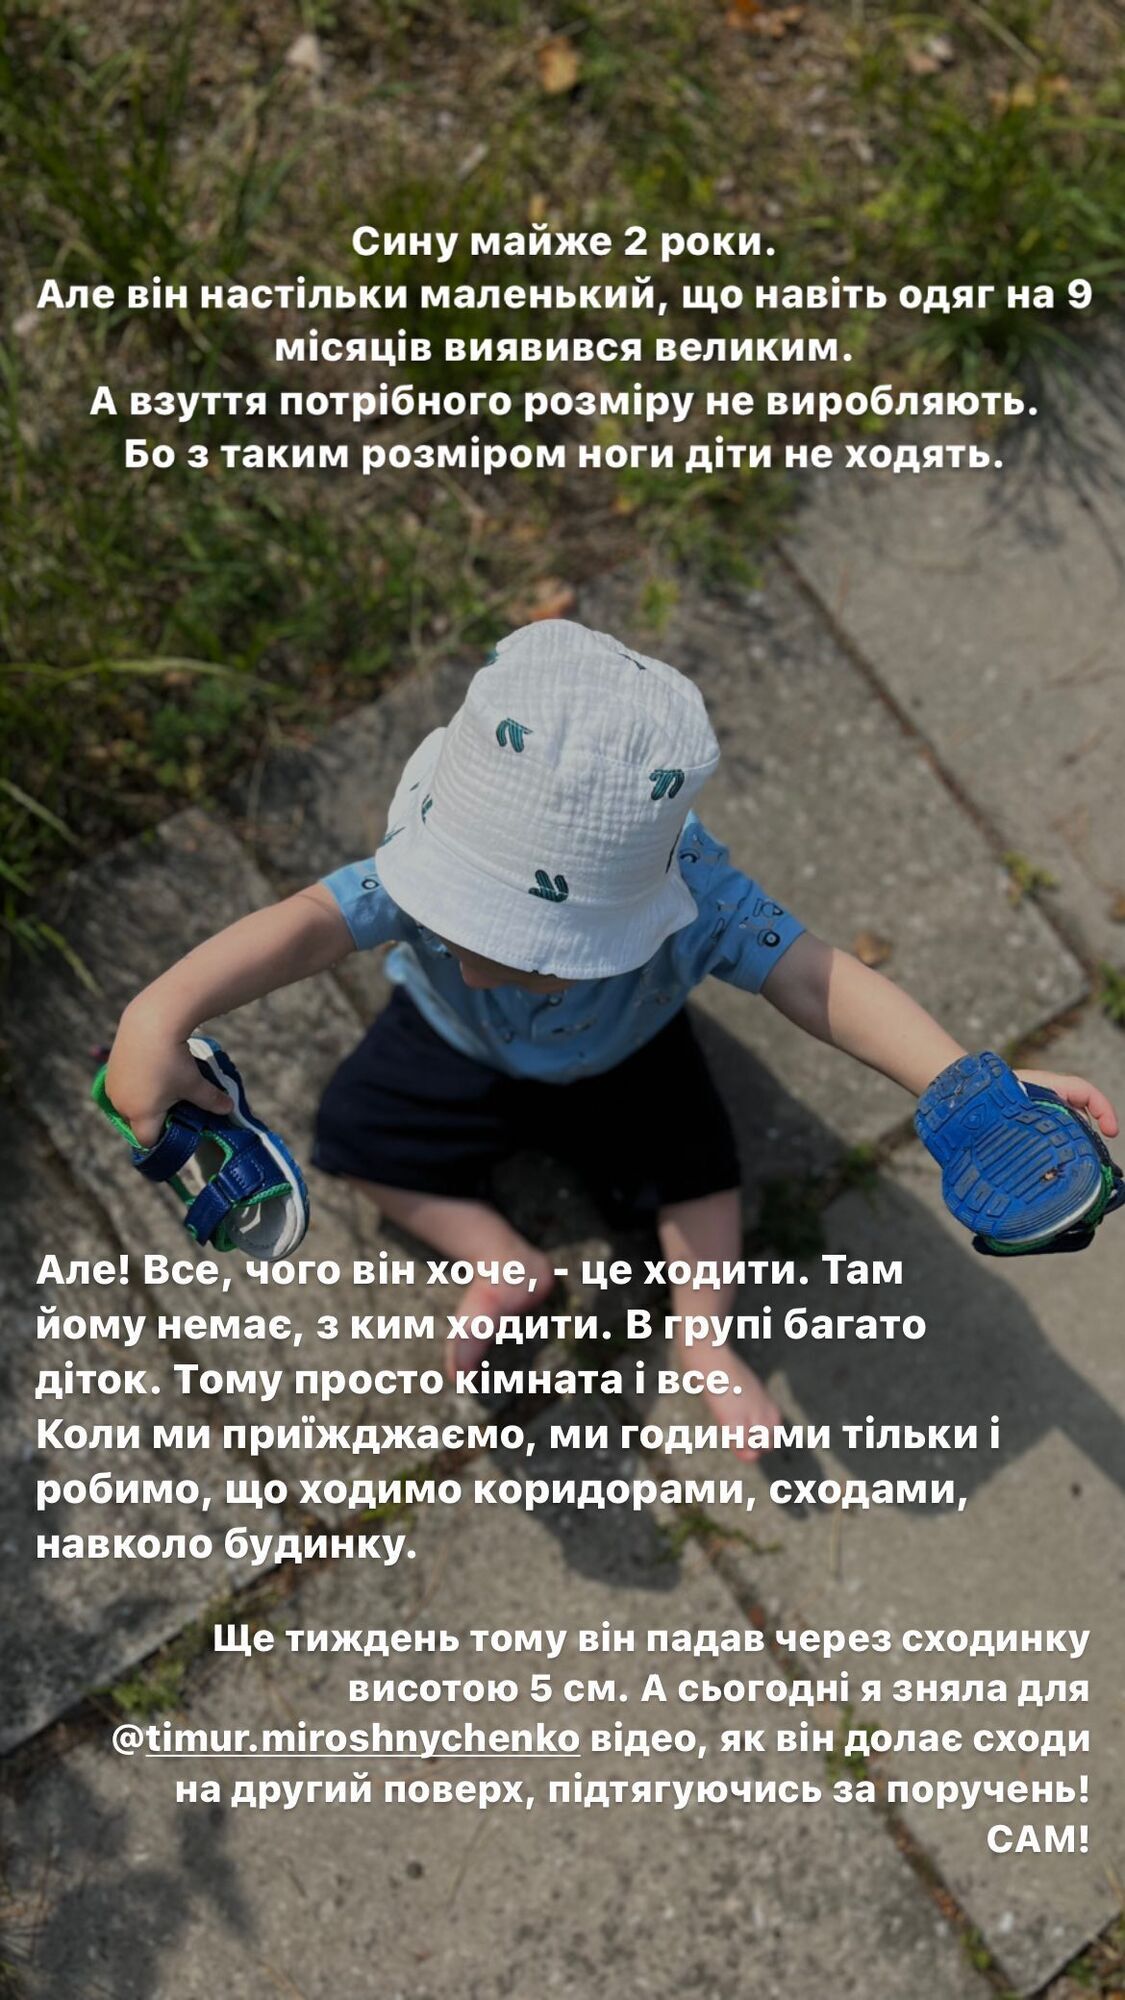 Дружина Мірошниченка показала хлопчика з дитбудинку, усиновленням якого вони займаються: усе, чого він хоче, — ходити